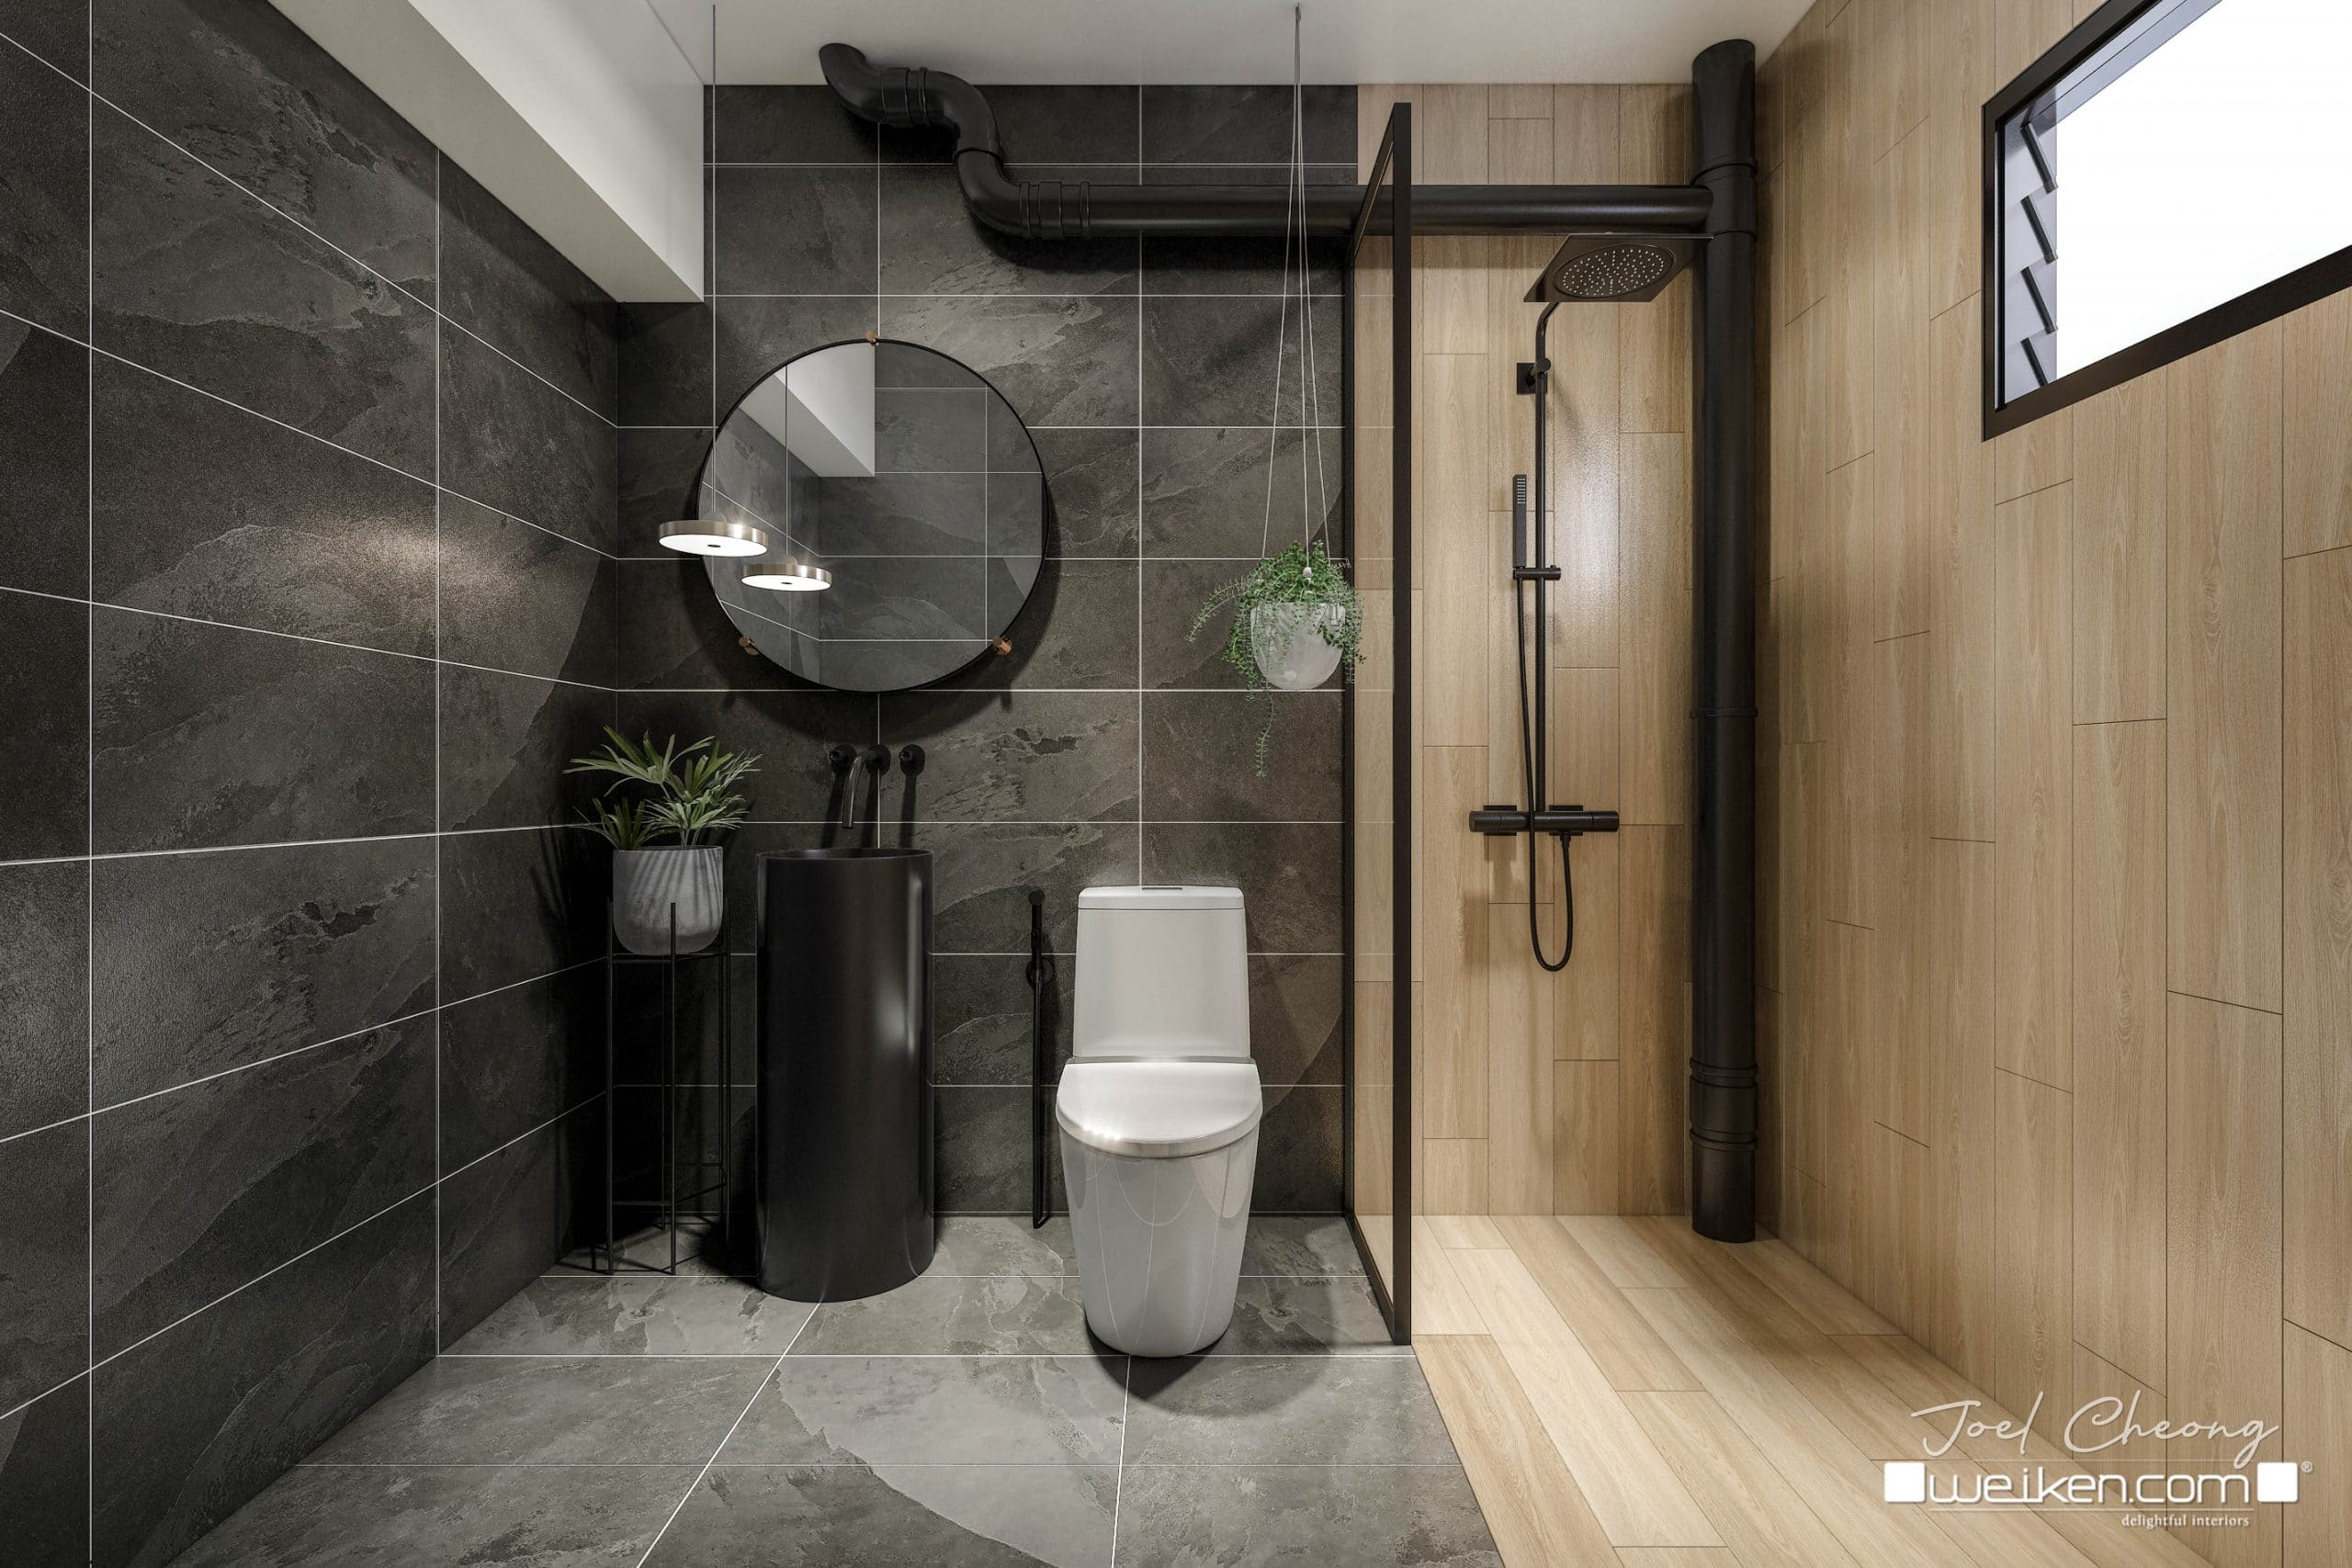 Geometrie verantwoordelijkheid onbekend Tiles Design for Toilet] #10 Creative Ideas for Your Bathrooms - Weiken  Interior Design